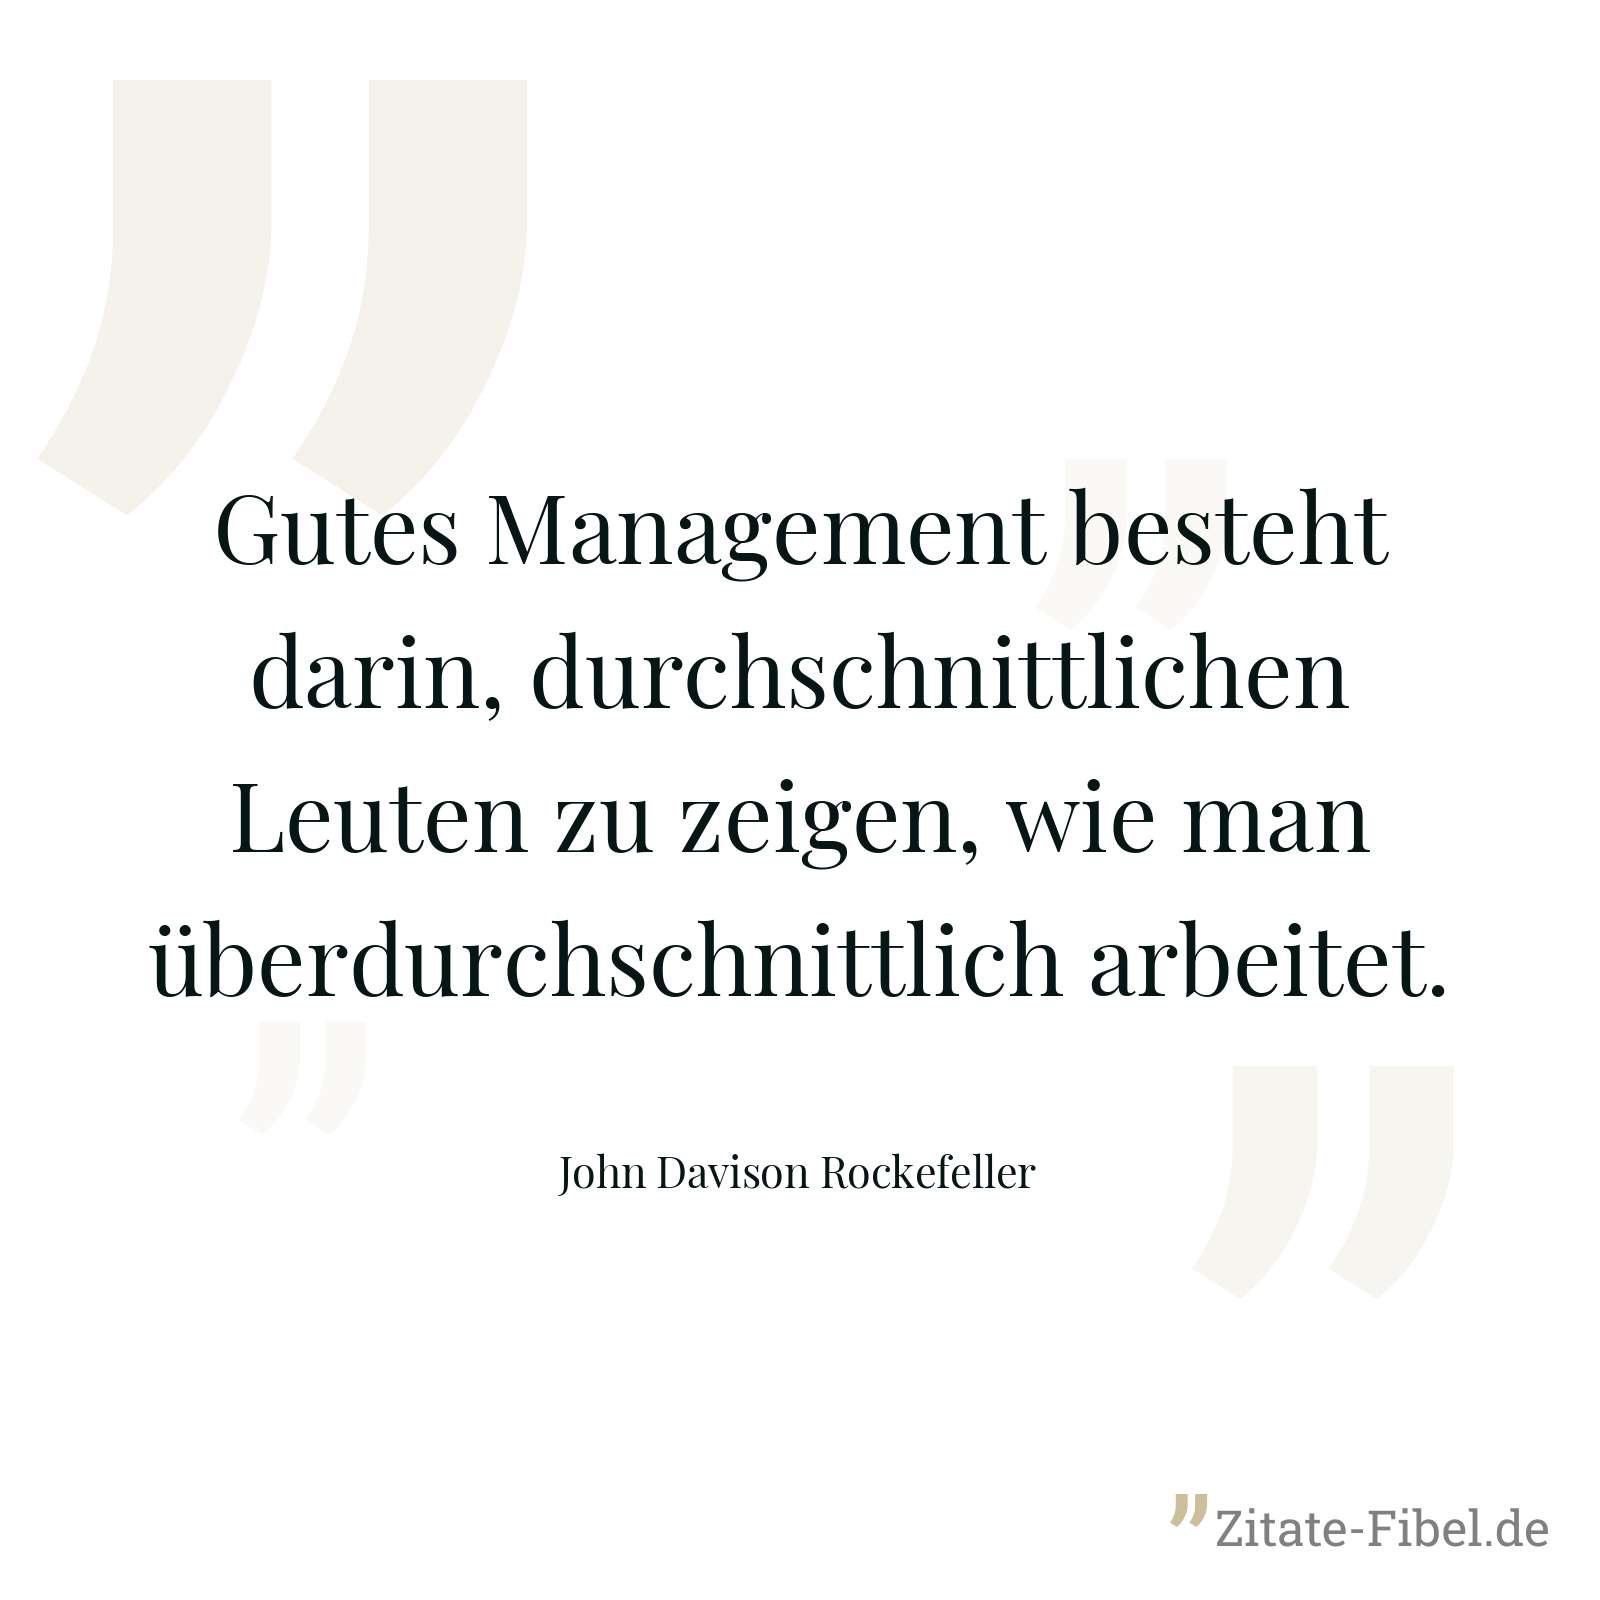 Gutes Management besteht darin, durchschnittlichen Leuten zu zeigen, wie man überdurchschnittlich arbeitet. - John Davison Rockefeller